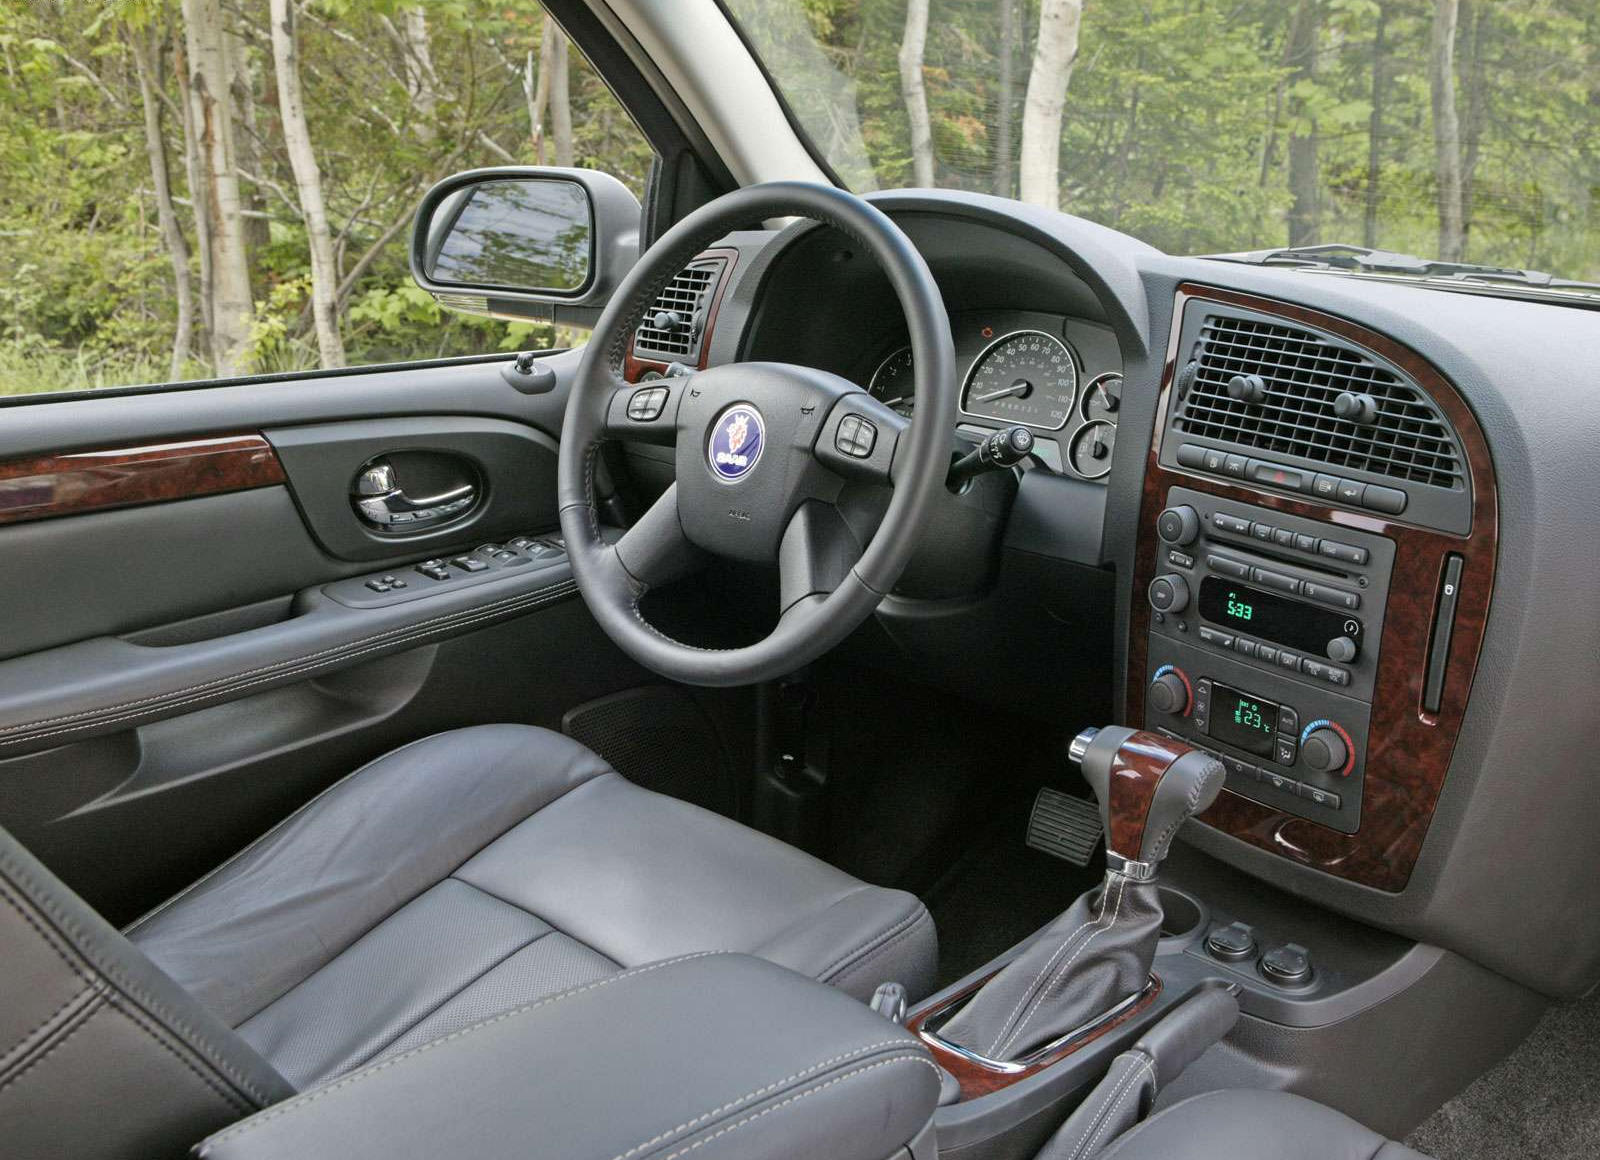 2009 Saab 9-7X Dashboard